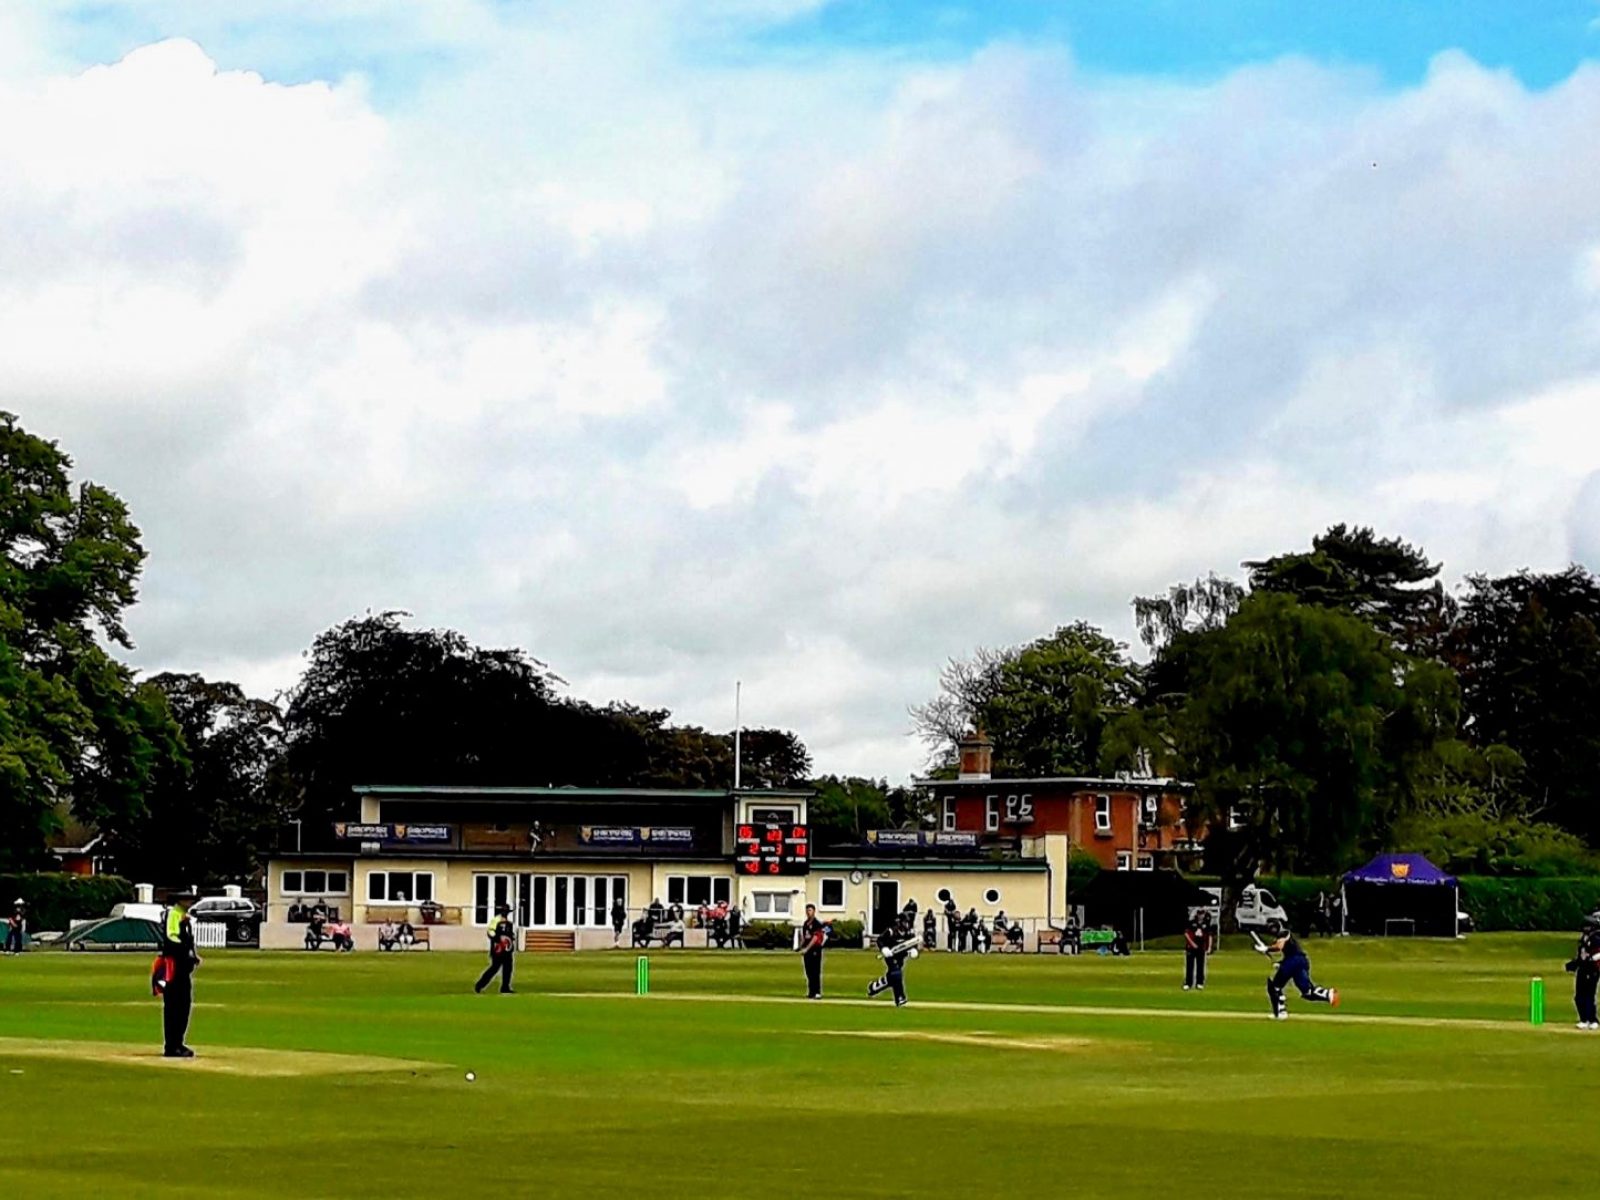 Wrekin-College-cricket-ground-copy